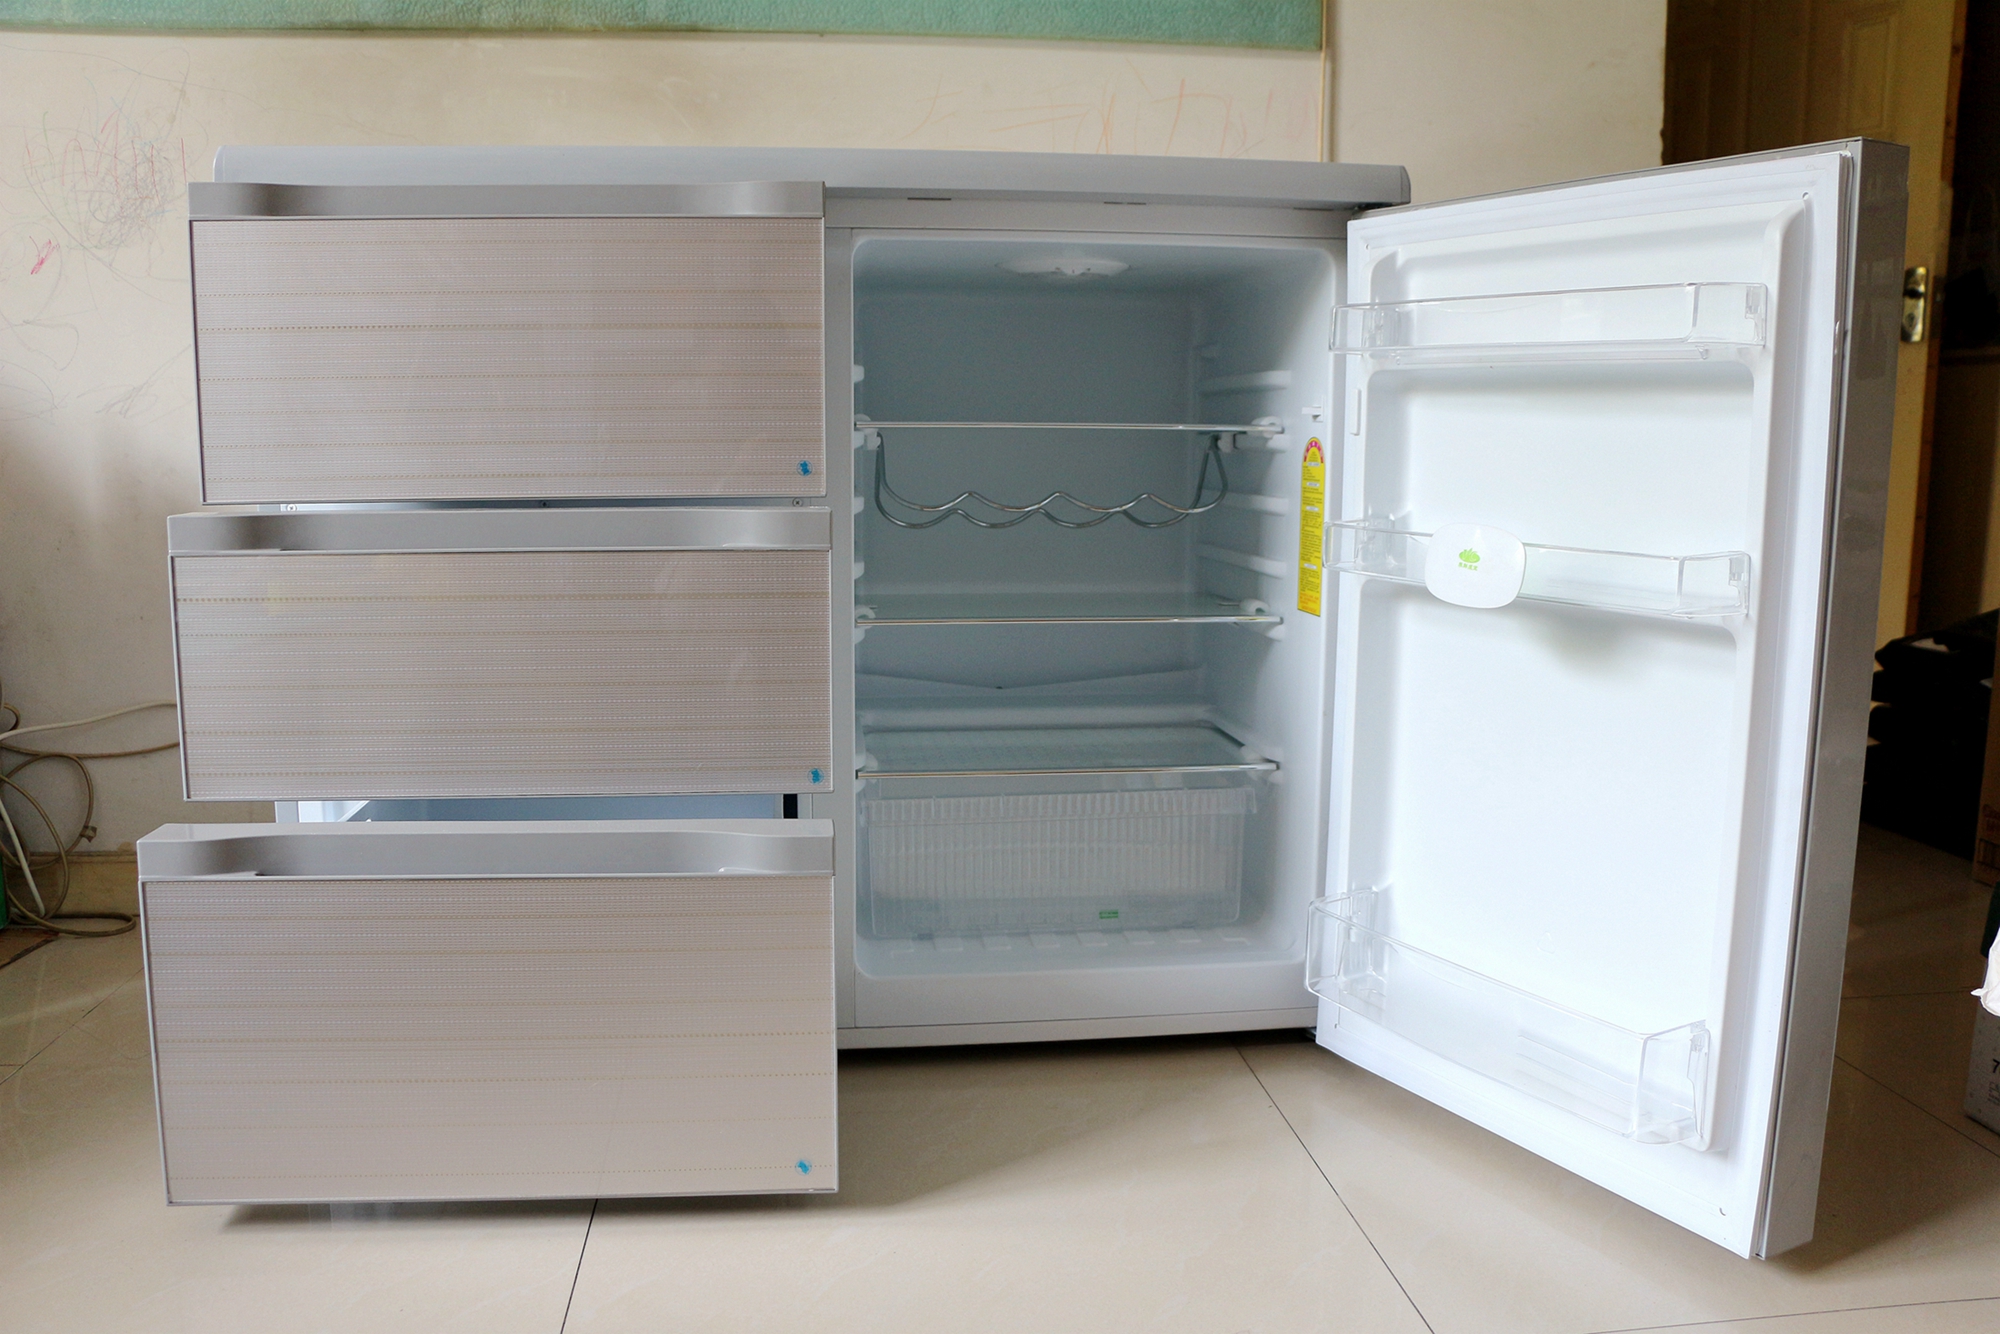 【试用评测】专利卧式橱柜冰箱!厨房新主张!